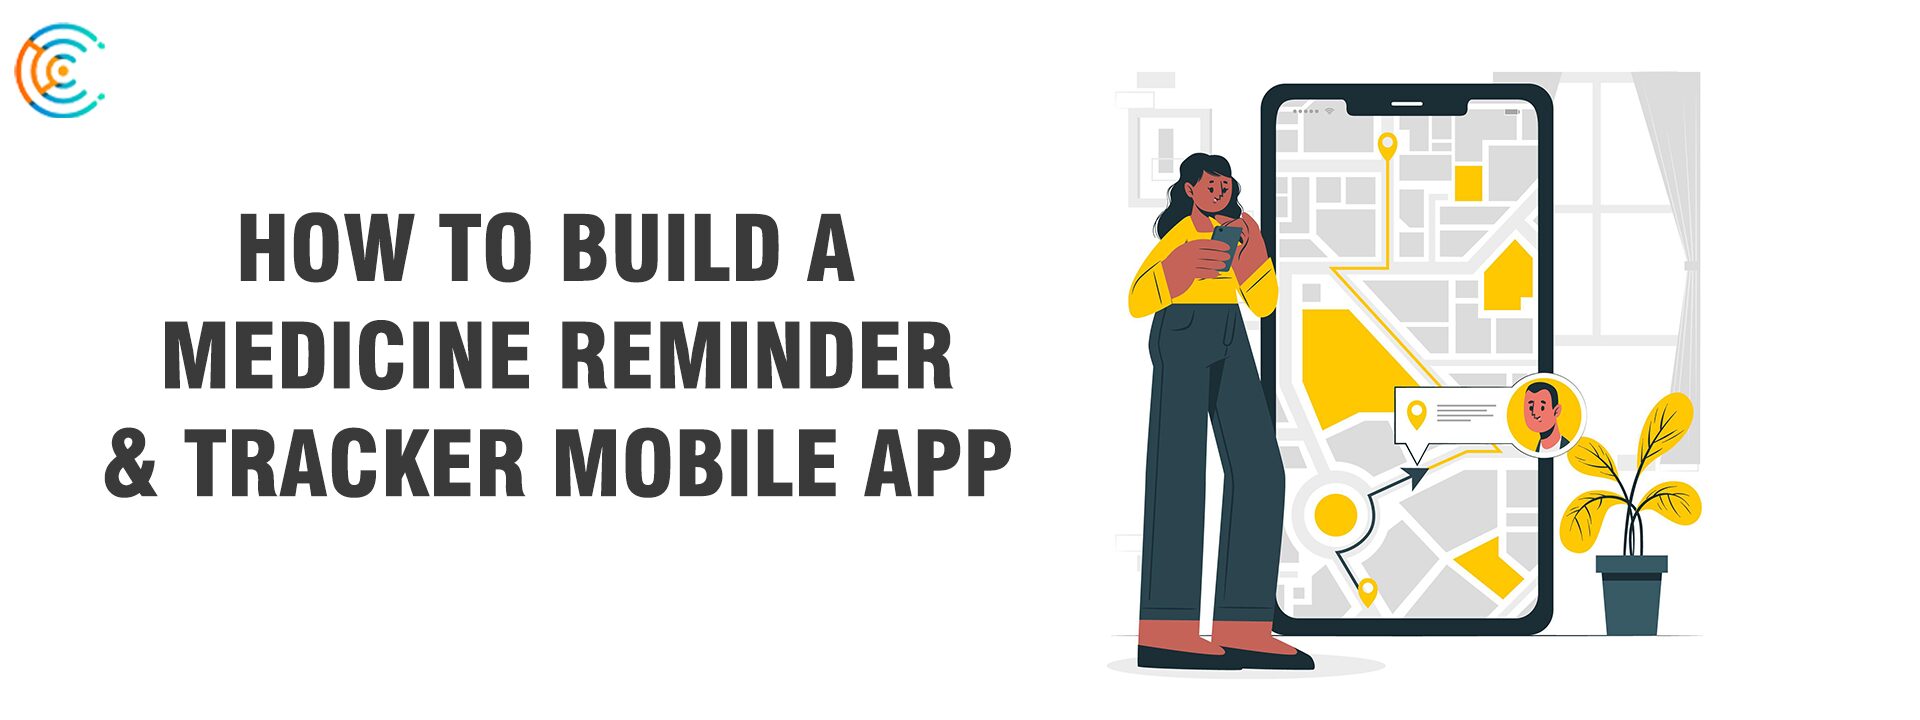 Build A Medicine Reminder & Tracker Mobile App